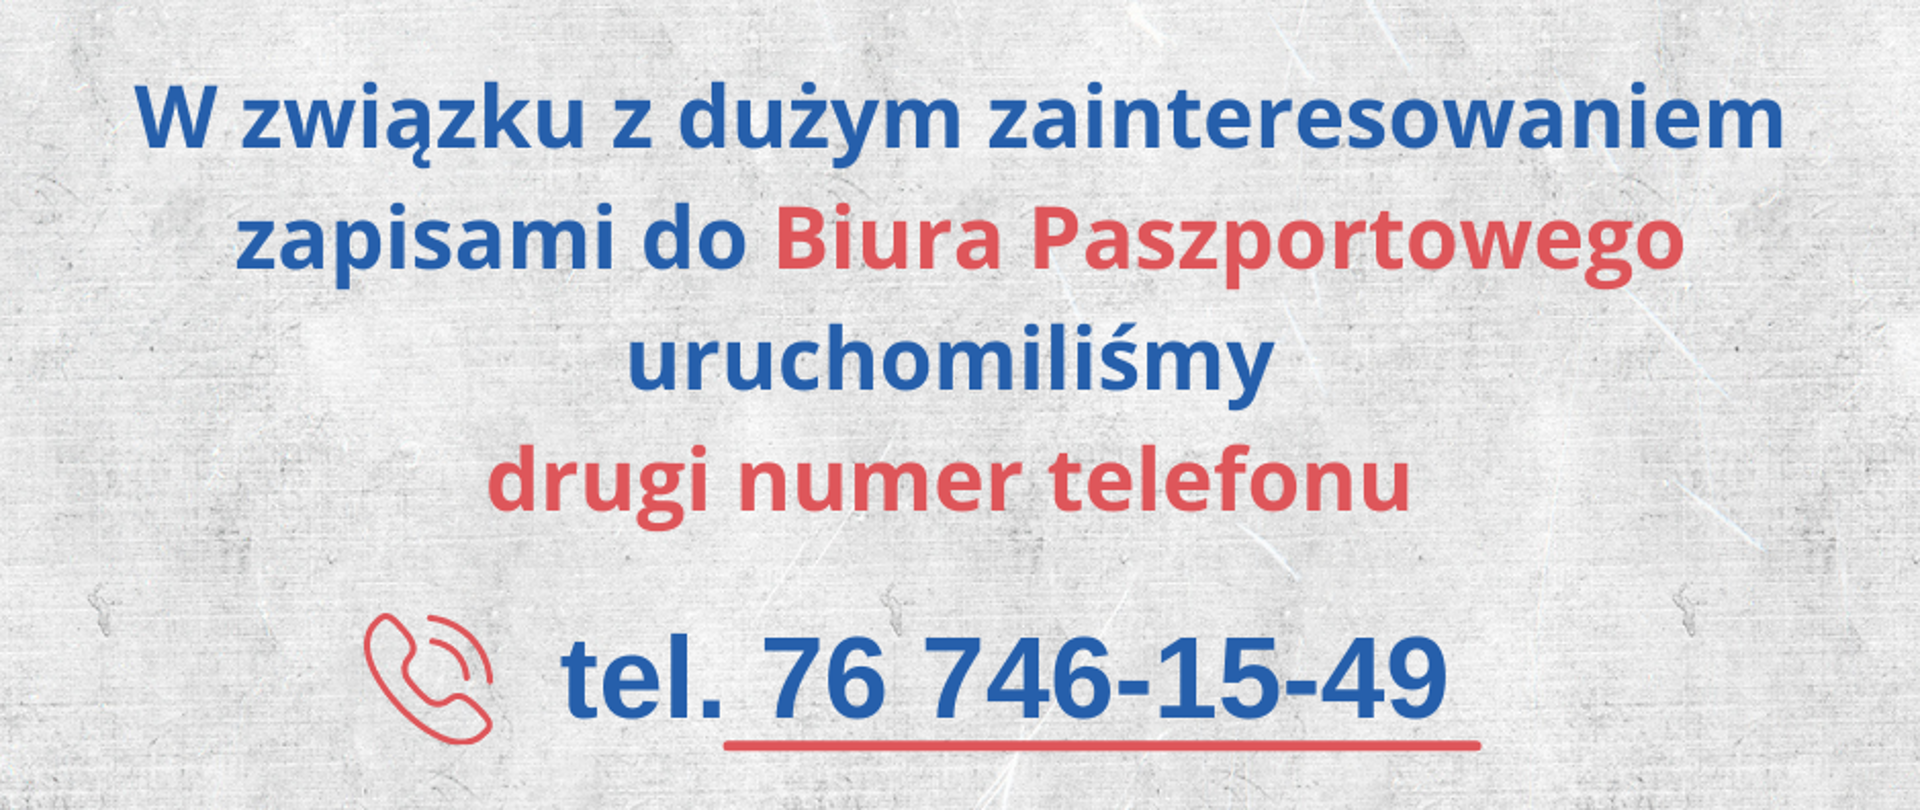 W związku z dużym zainteresowaniem zapisami do Biura Paszportowego uruchomiliśmy drugi numer telefonu: 76 746 15 49.